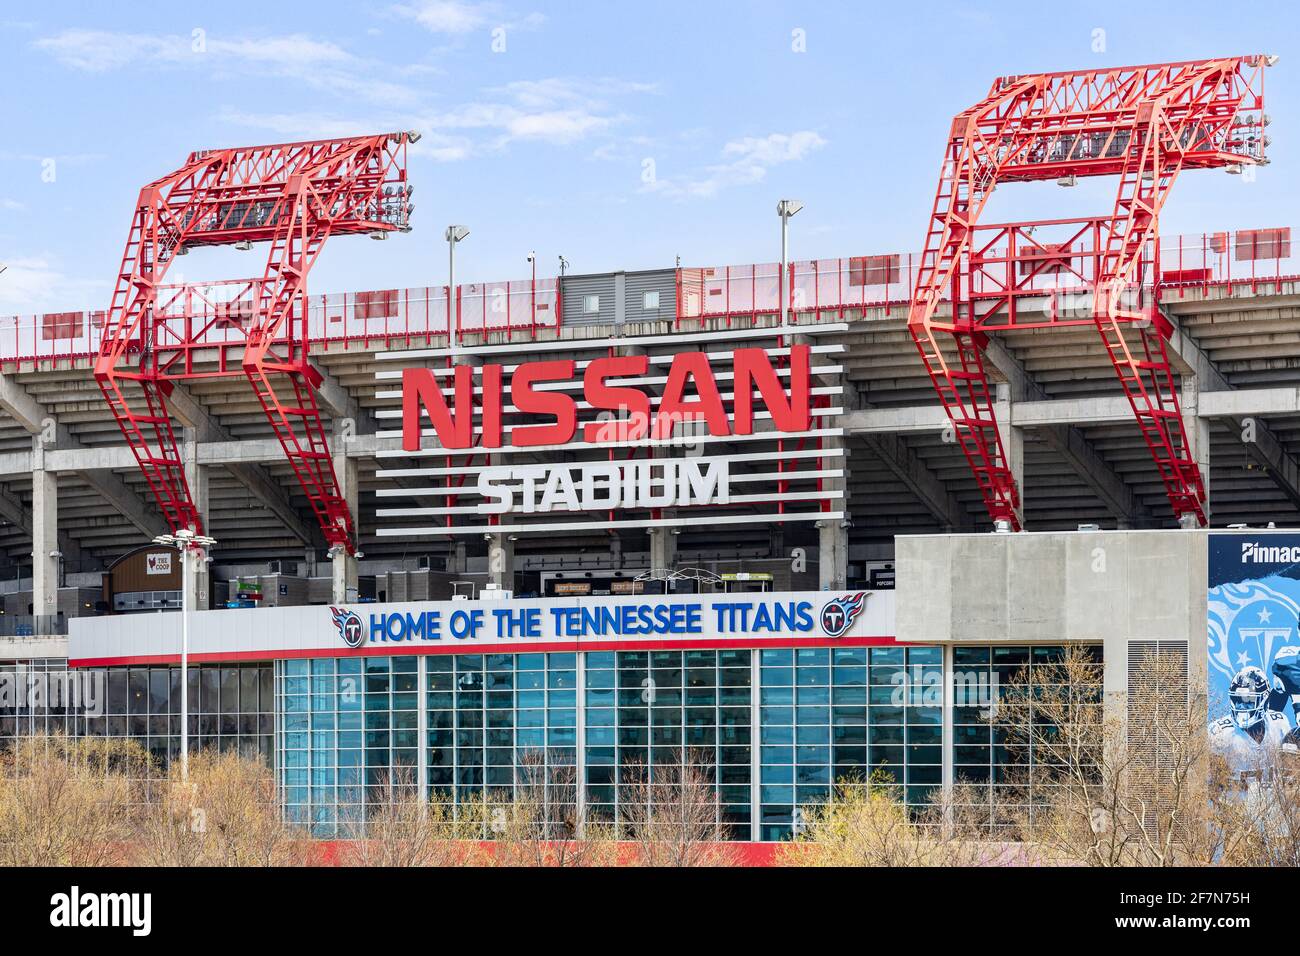 Le Nissan Stadium accueille principalement les Tennessee Titans de la NFL, mais accueille également d'autres matchs de football, des concerts et des événements. Banque D'Images